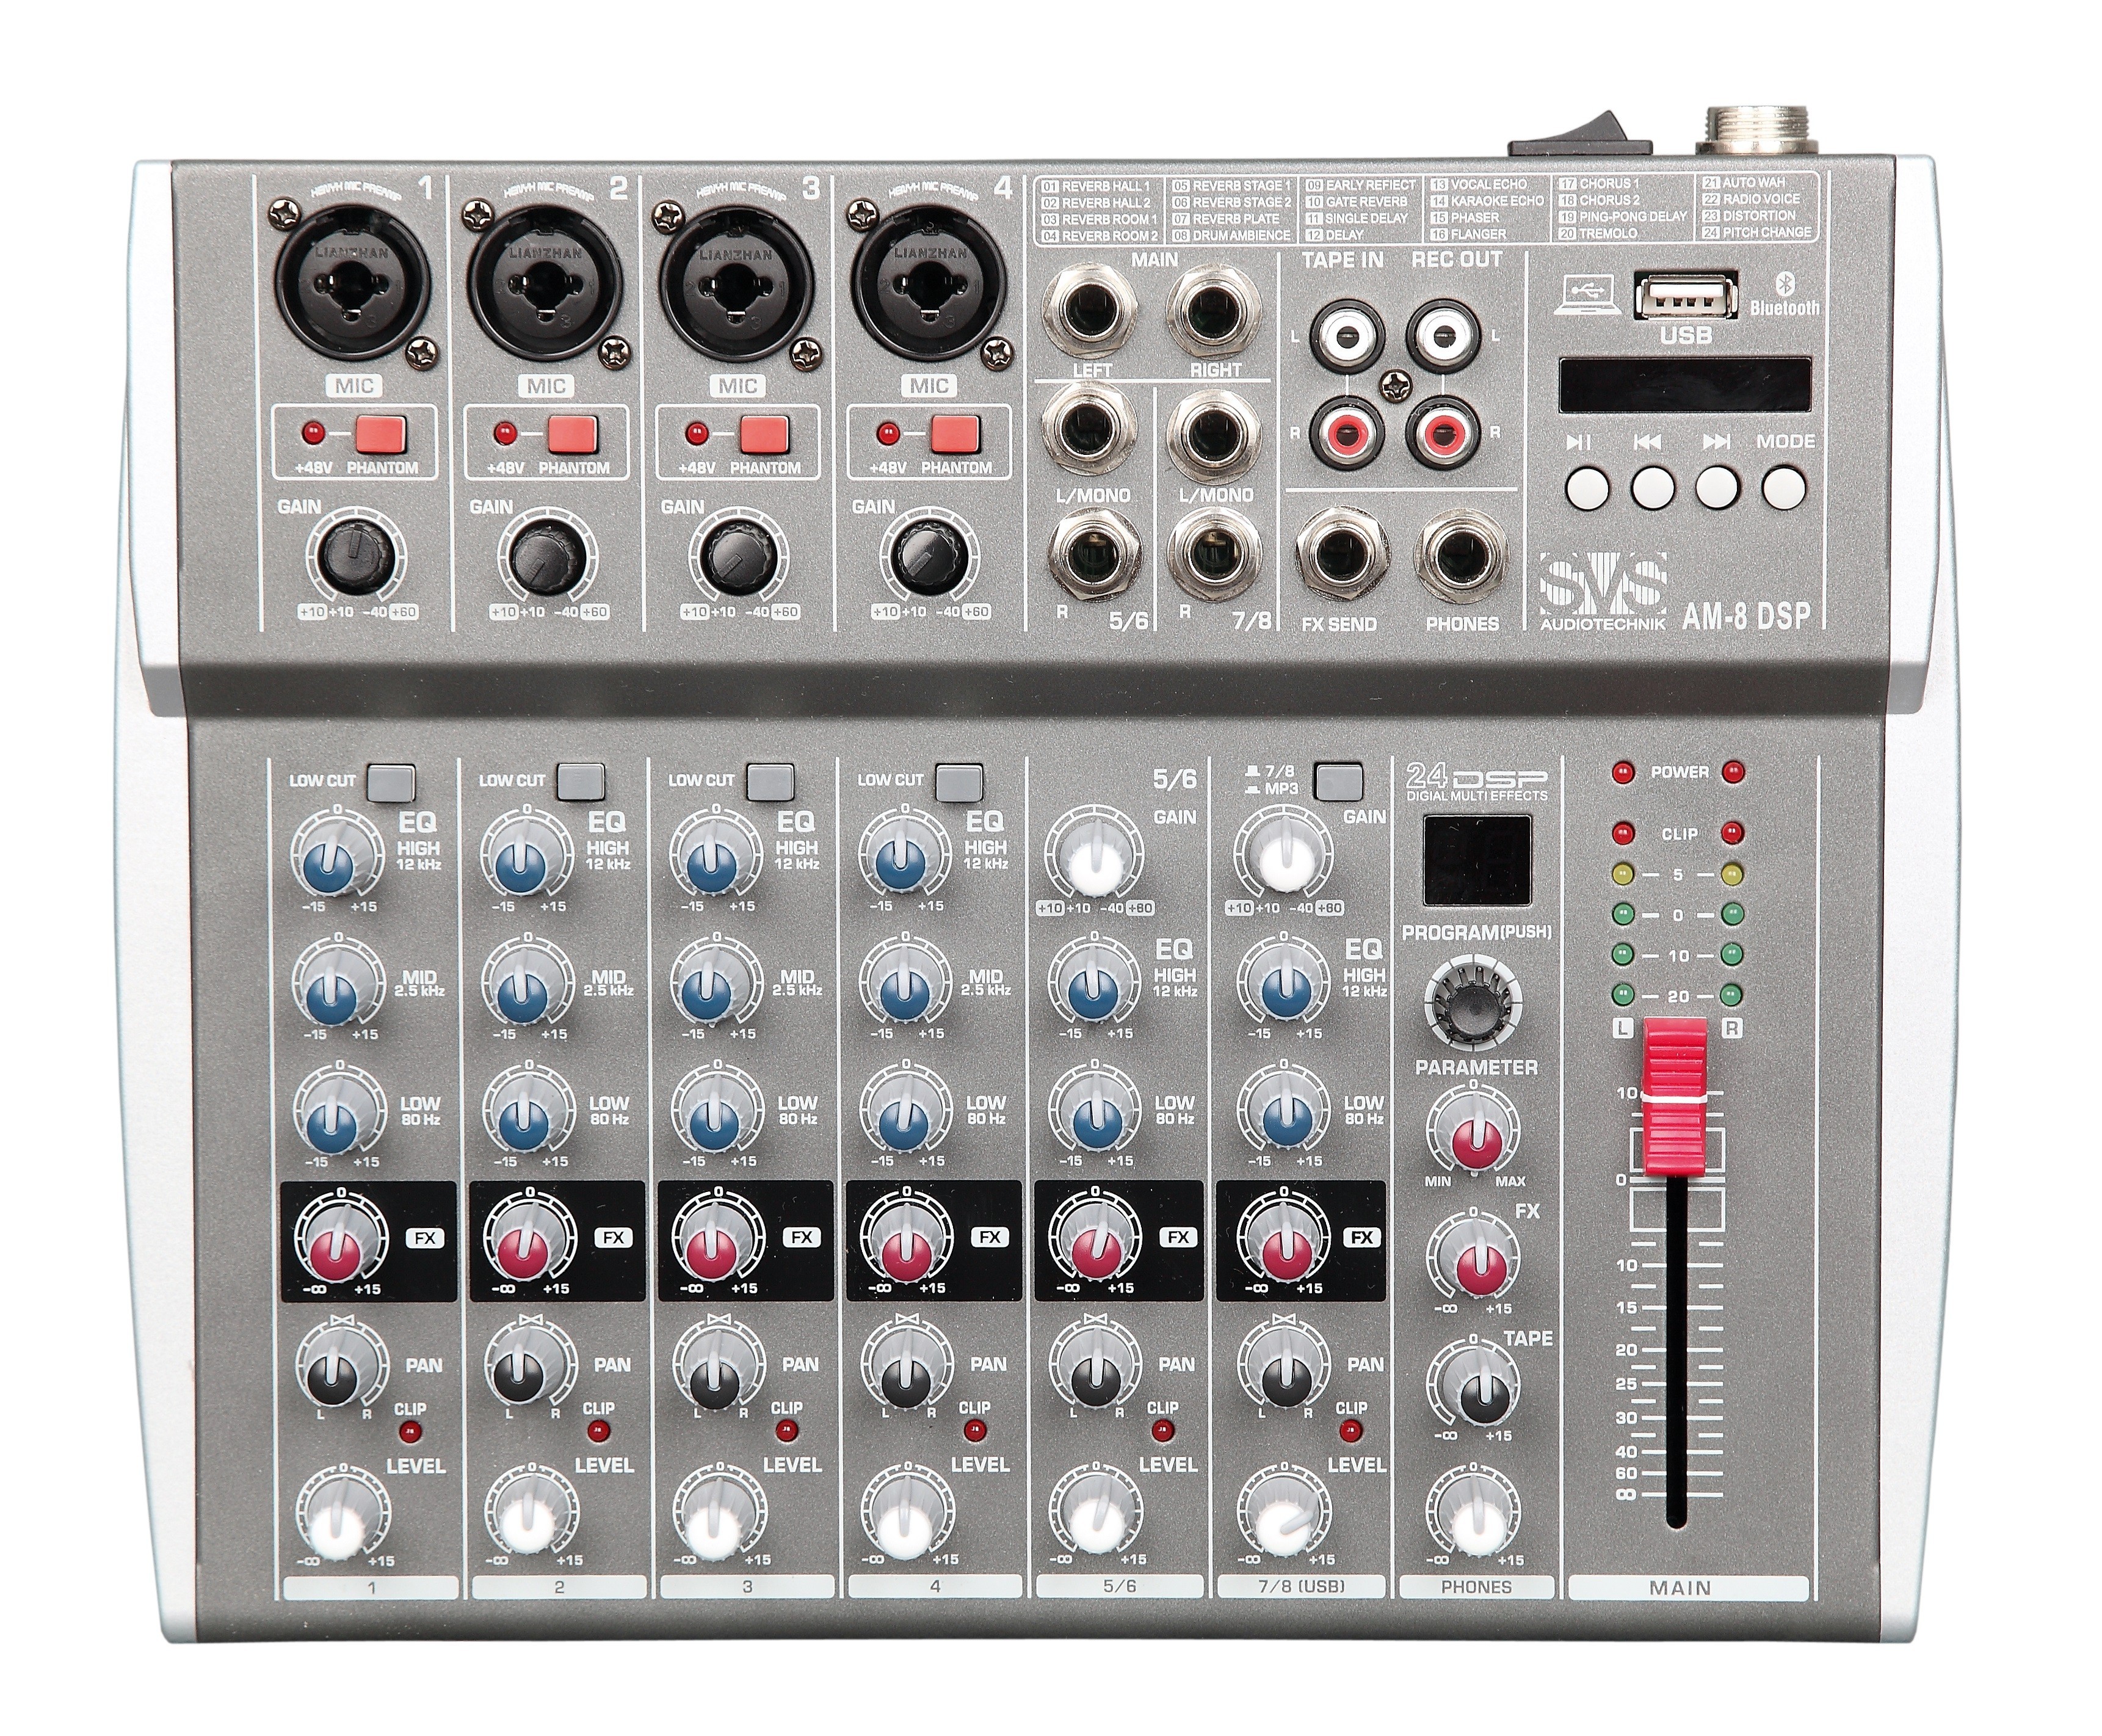 Детальная картинка товара SVS Audiotechnik mixers AM-8 DSP в магазине Музыкальная Тема